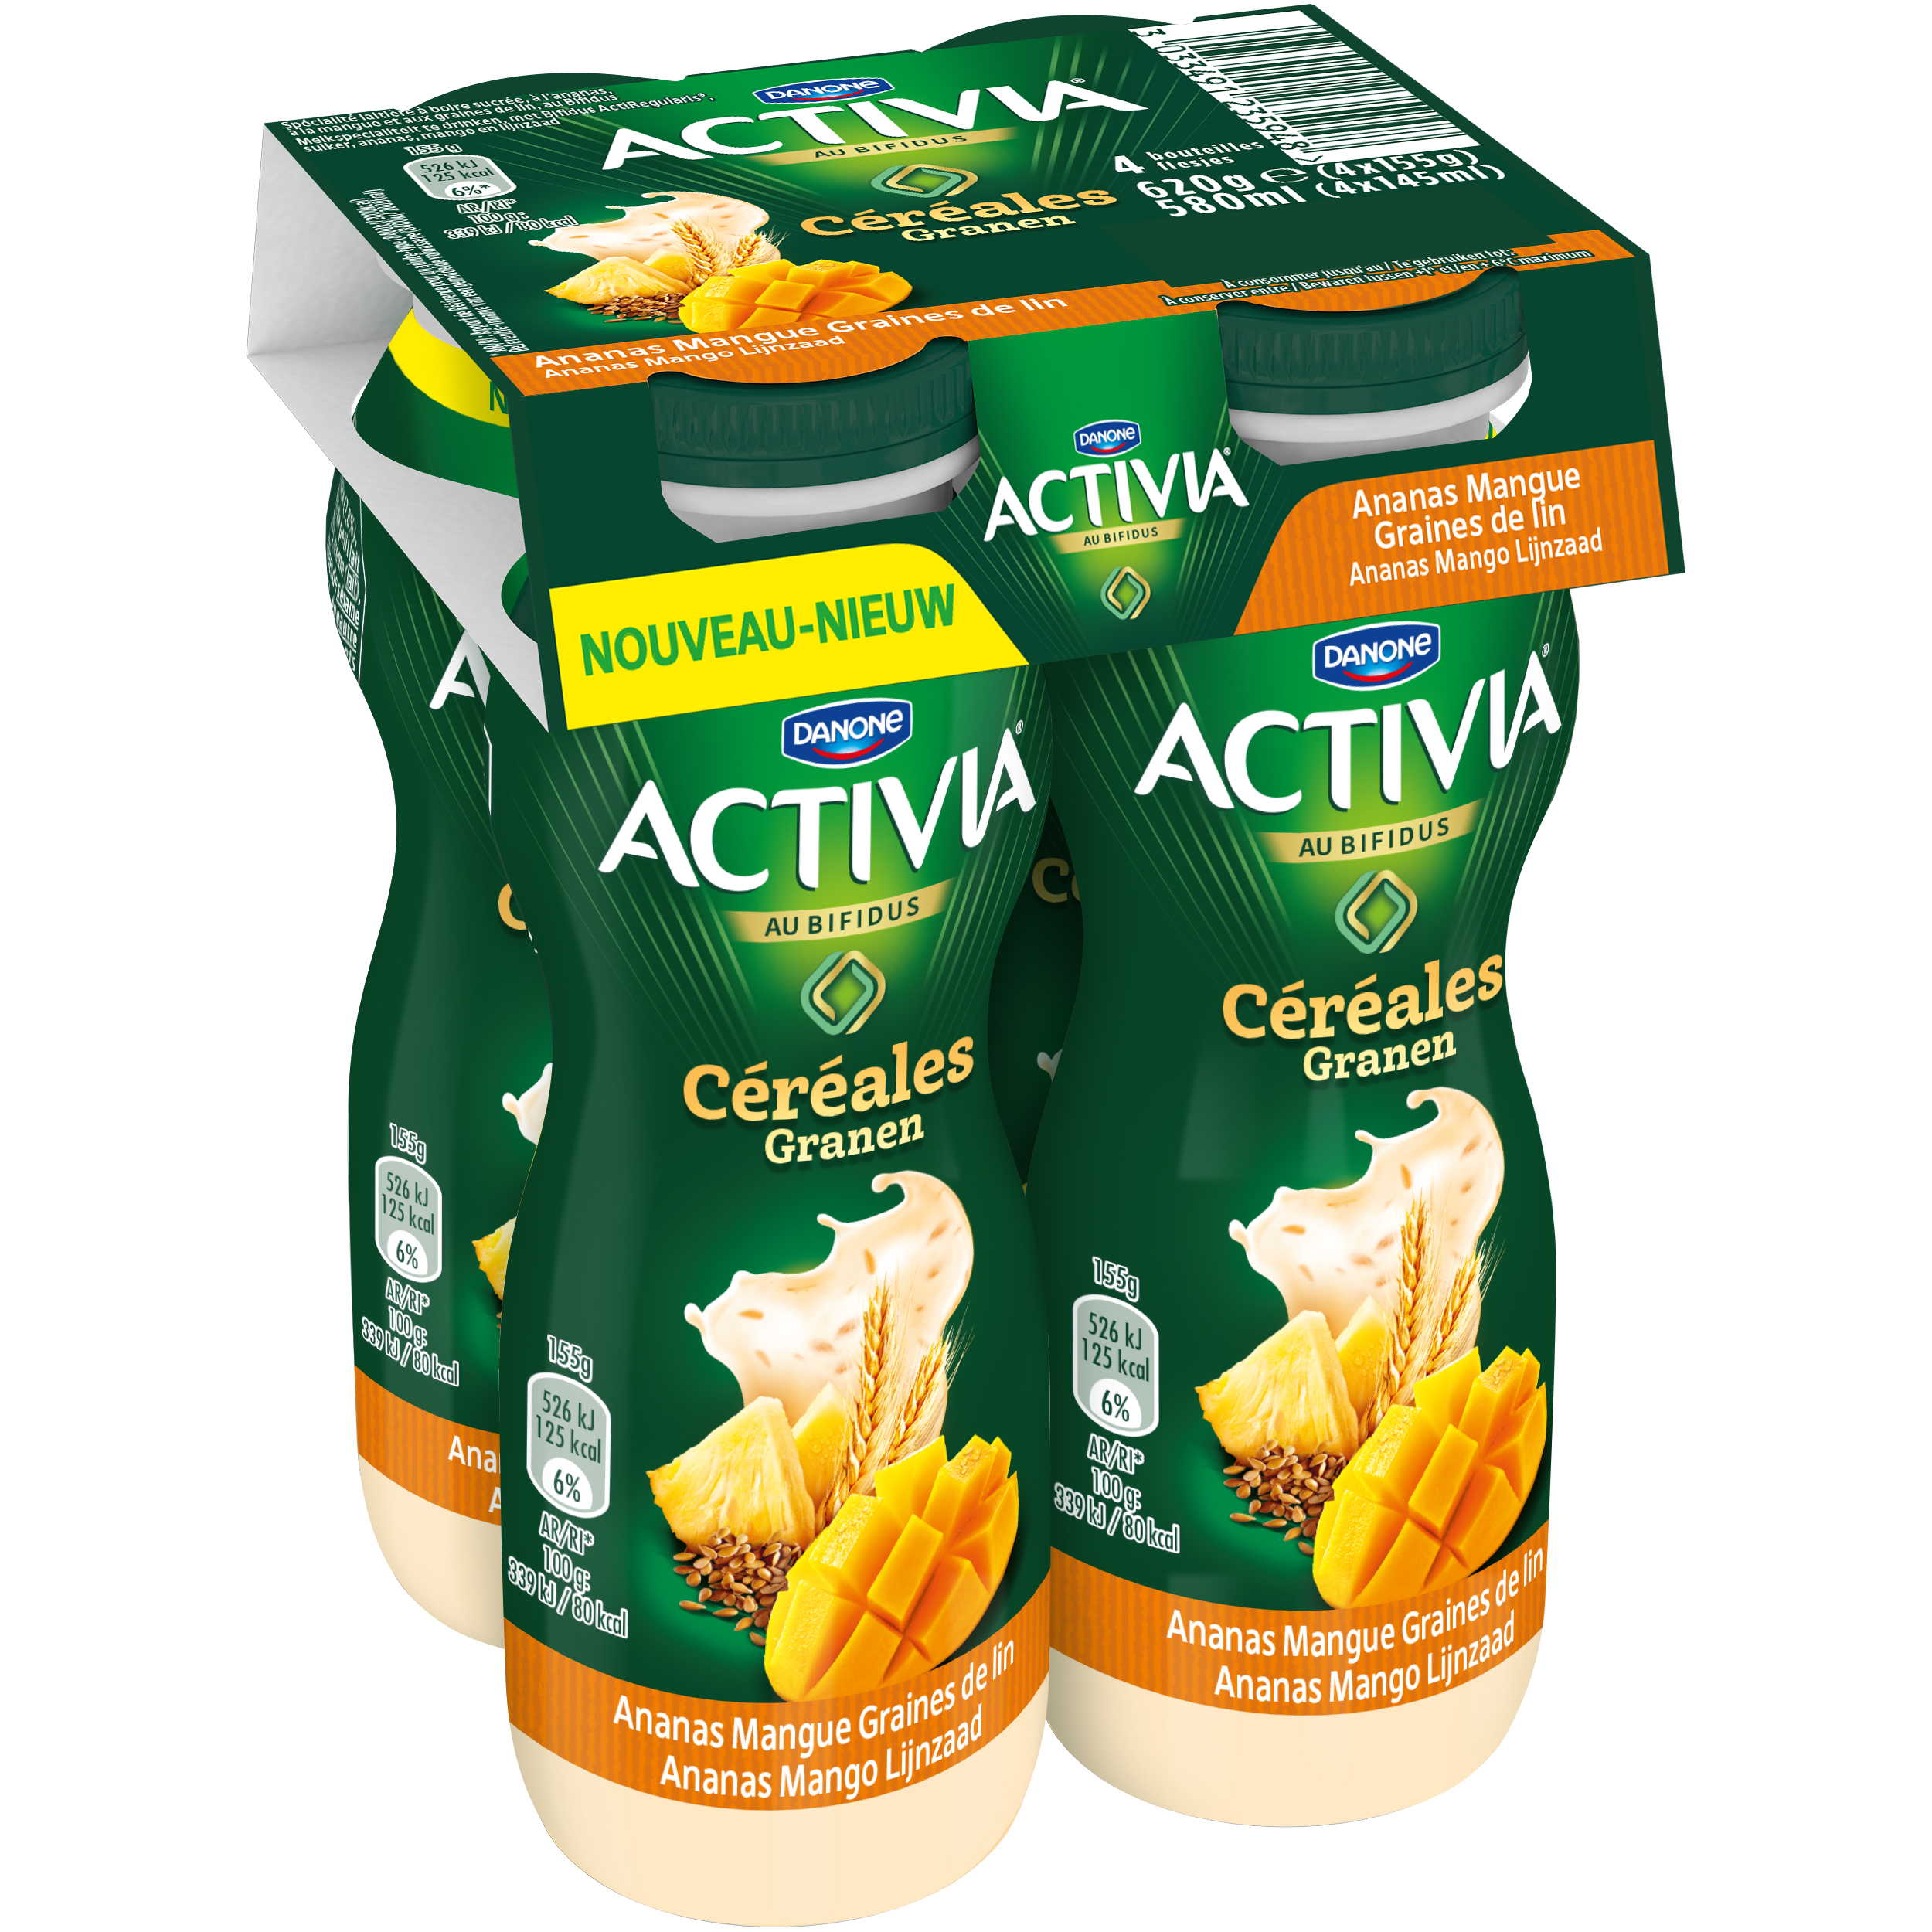 Activia Céréales Quinoa Noisette, Activia - Avis et Tests